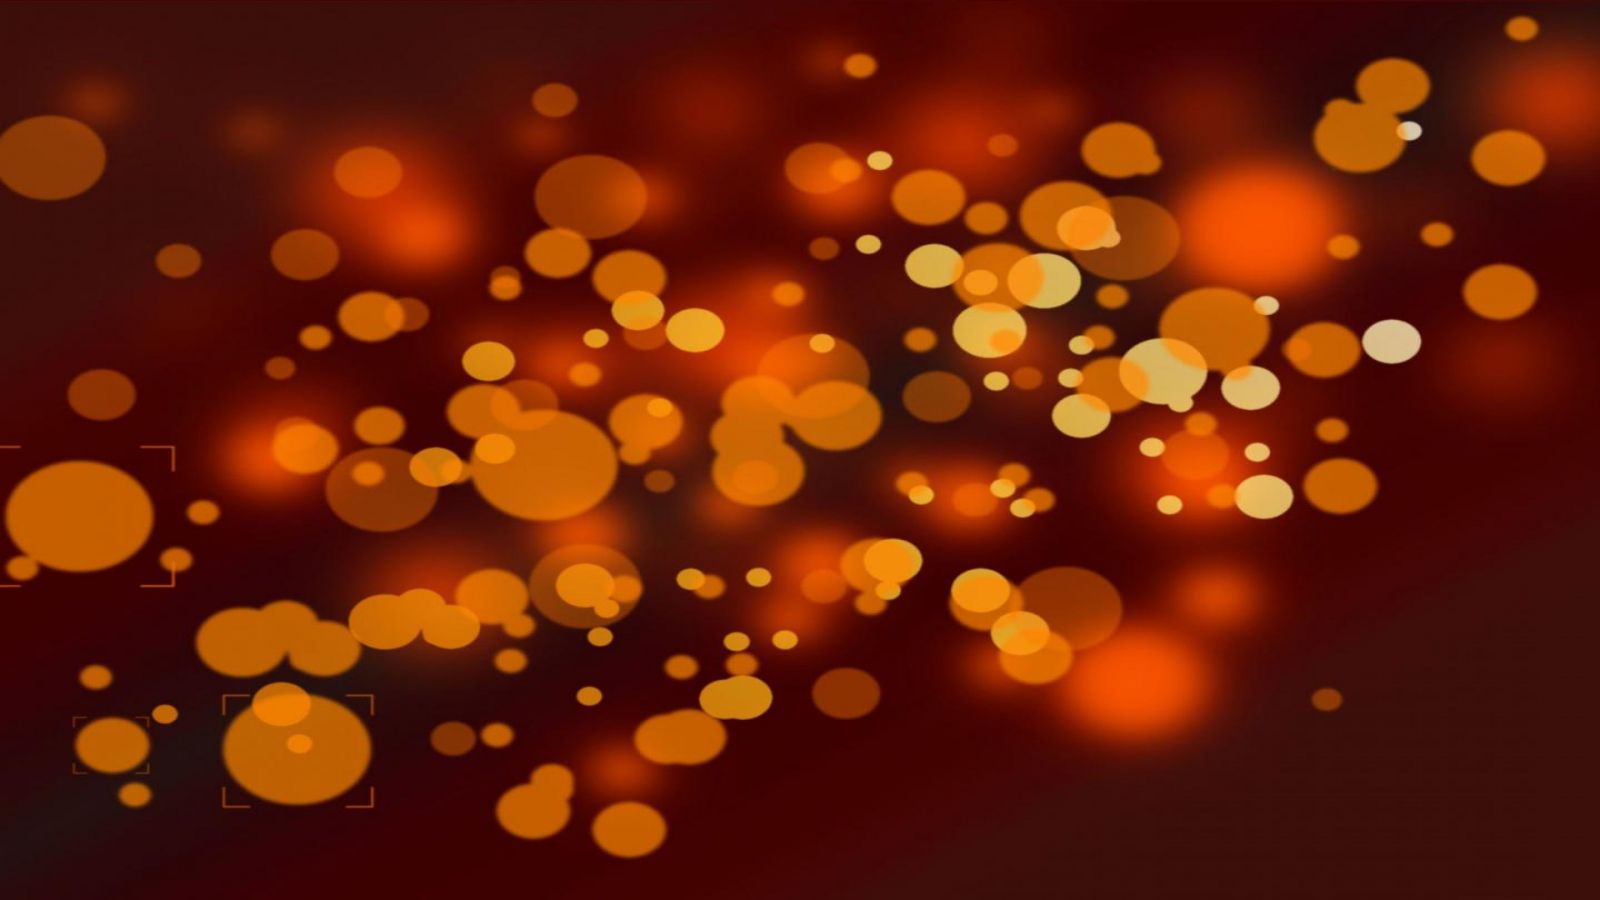 Desktop abstract orange wallpaper download